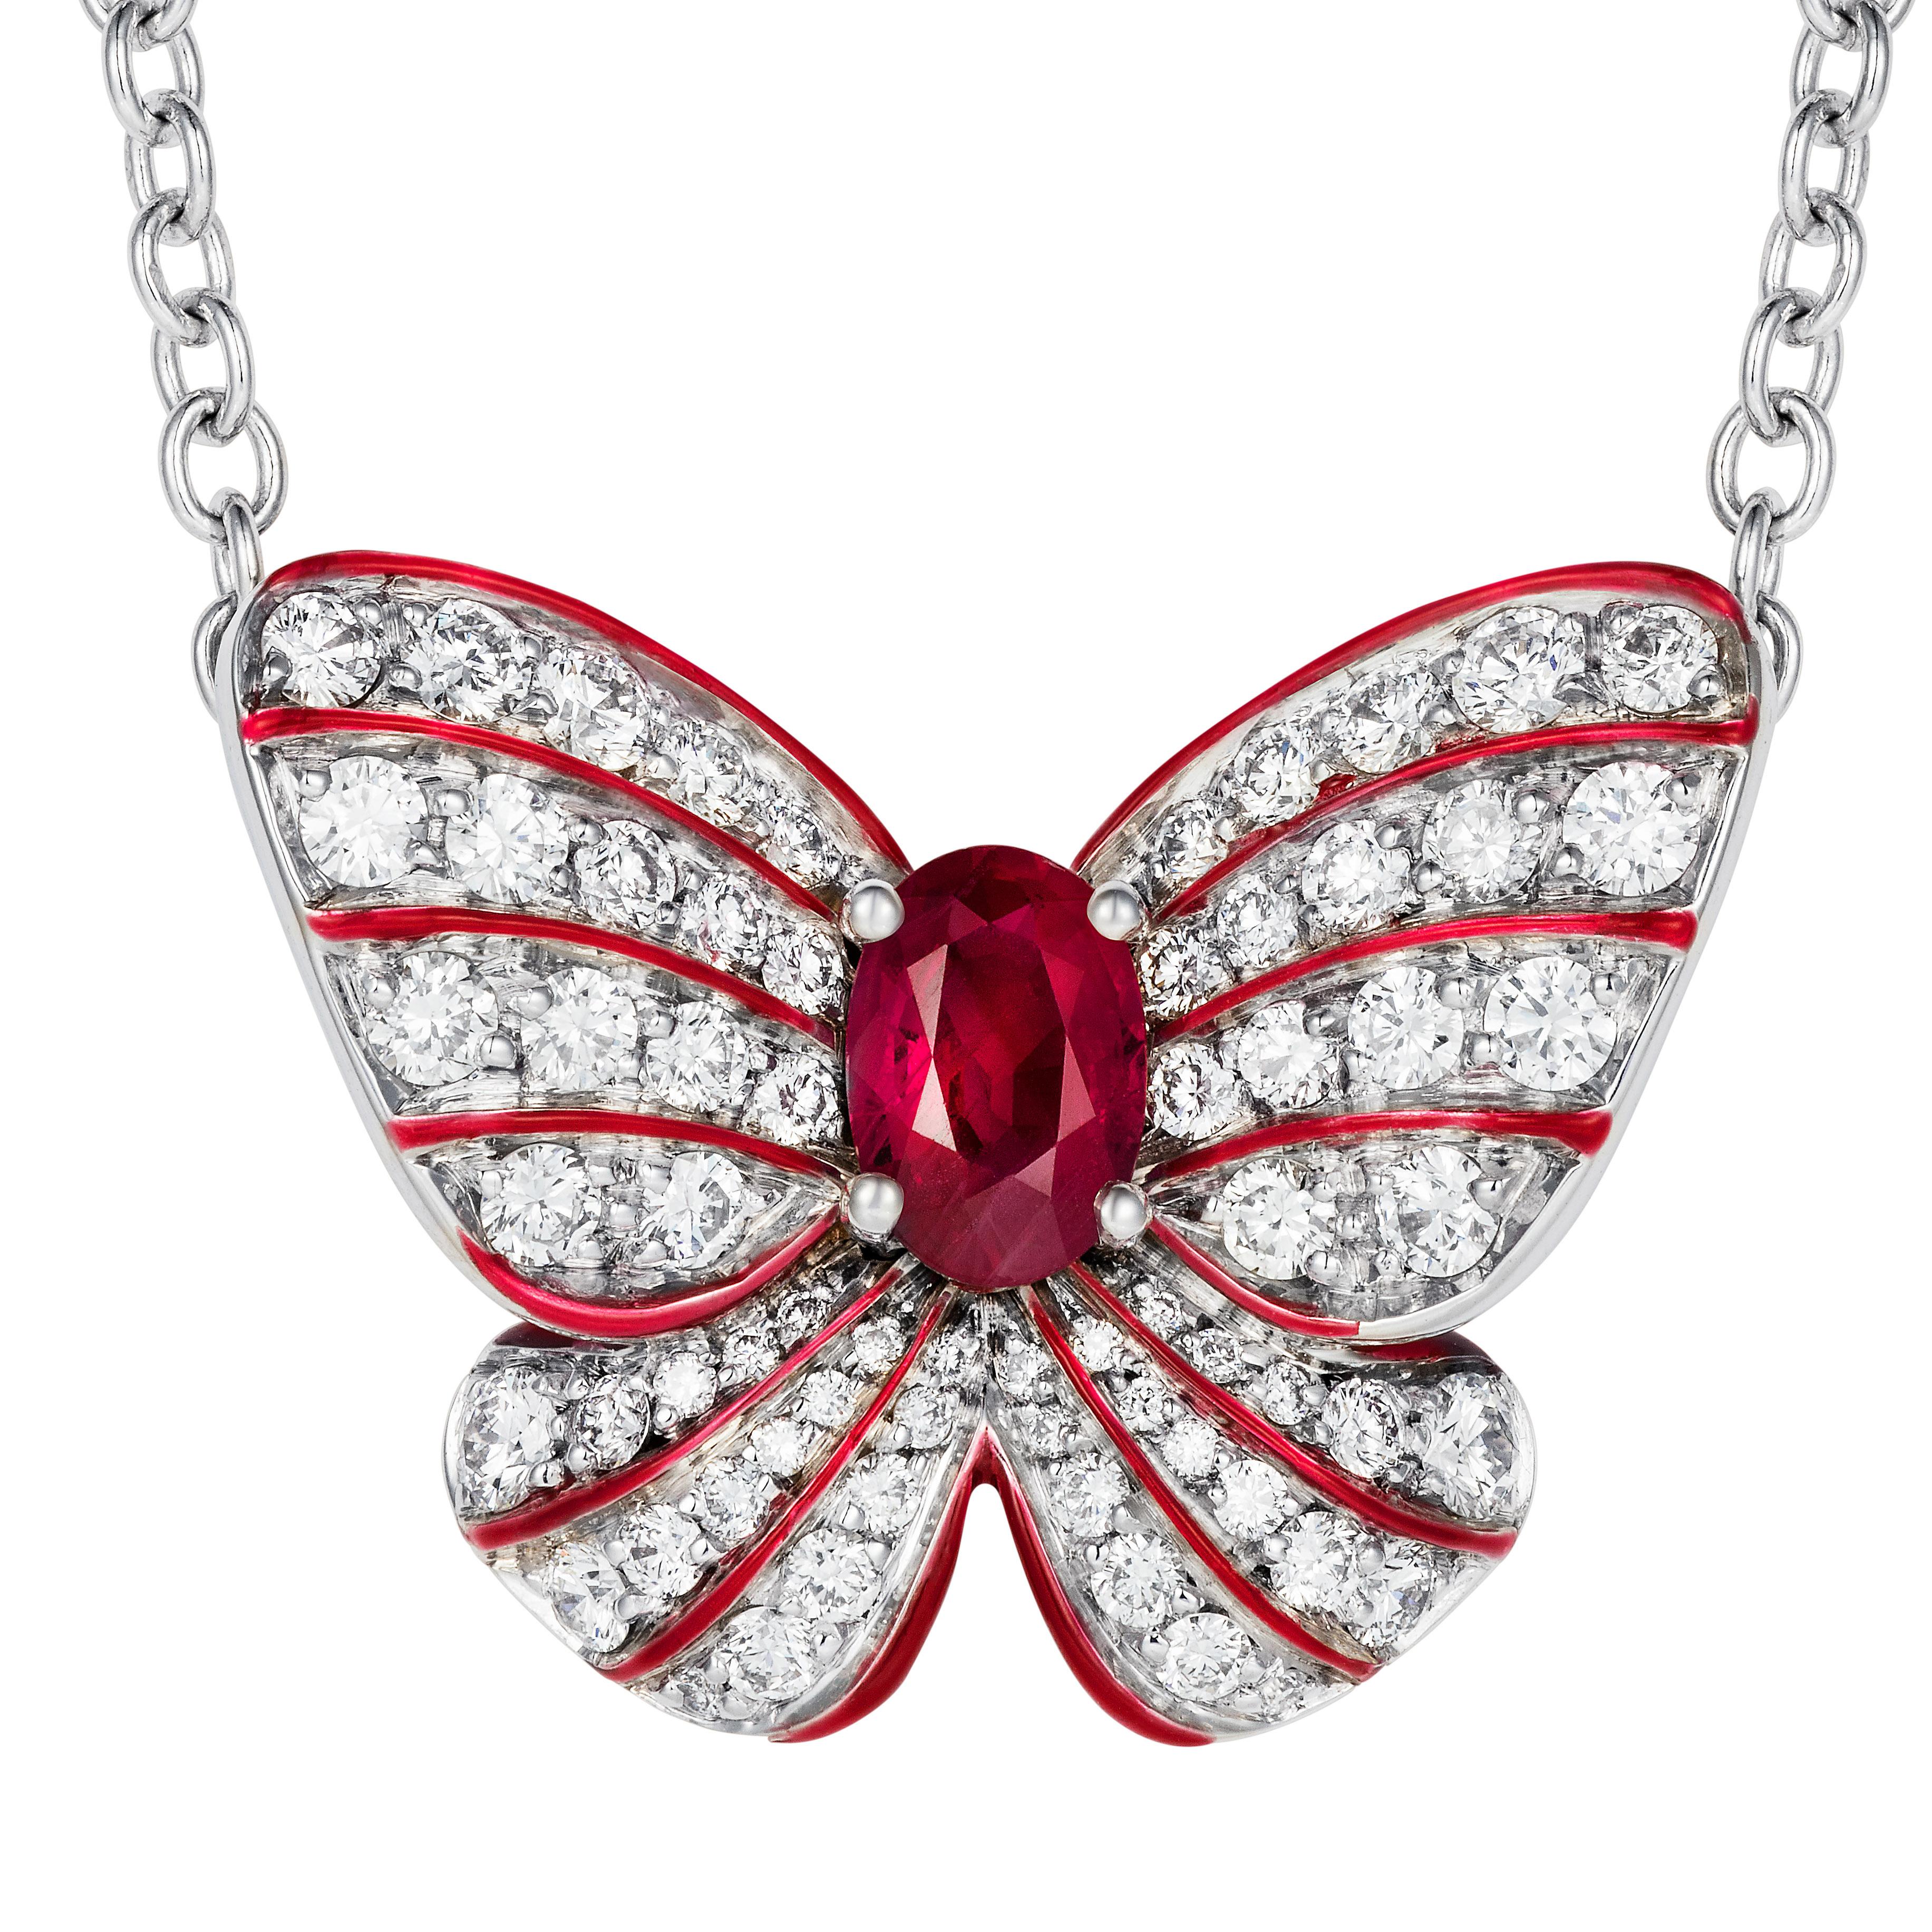 Ein wunderschöner Rubin befindet sich im Herzen eines stilisierten Schmetterlingsanhängers, der mit runden Diamanten und feinen roten Emaille-Akzenten besetzt ist.

- 0,50 Karat Rubin in ovaler Form
- 66 weiße Diamanten von insgesamt 0,73 Karat
-